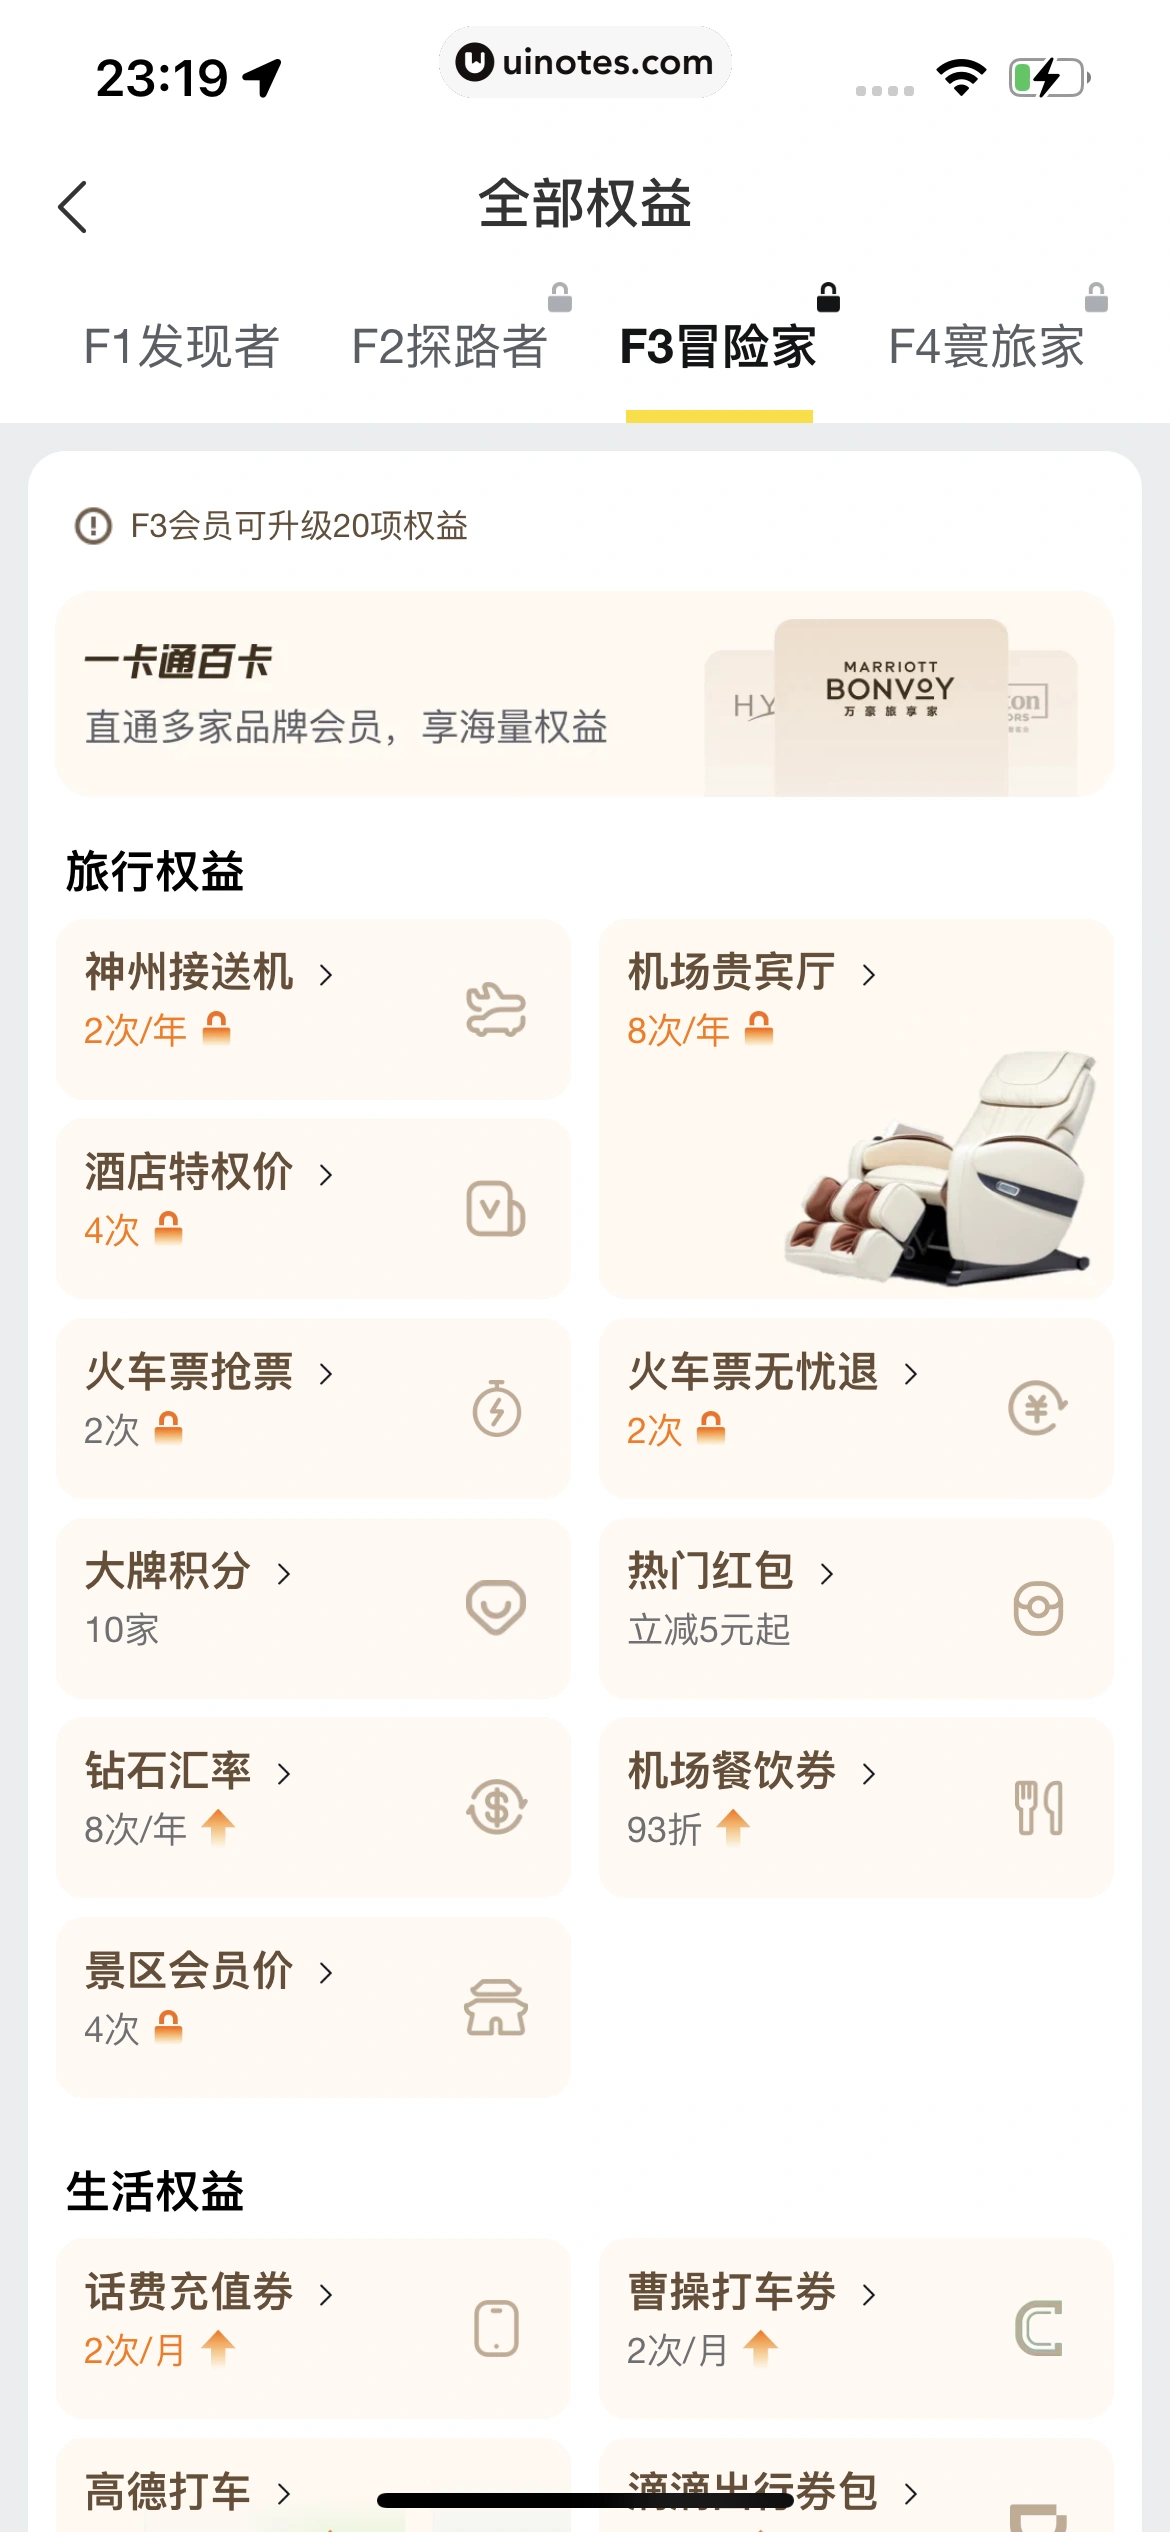 飞猪旅行 App 截图 851 - UI Notes